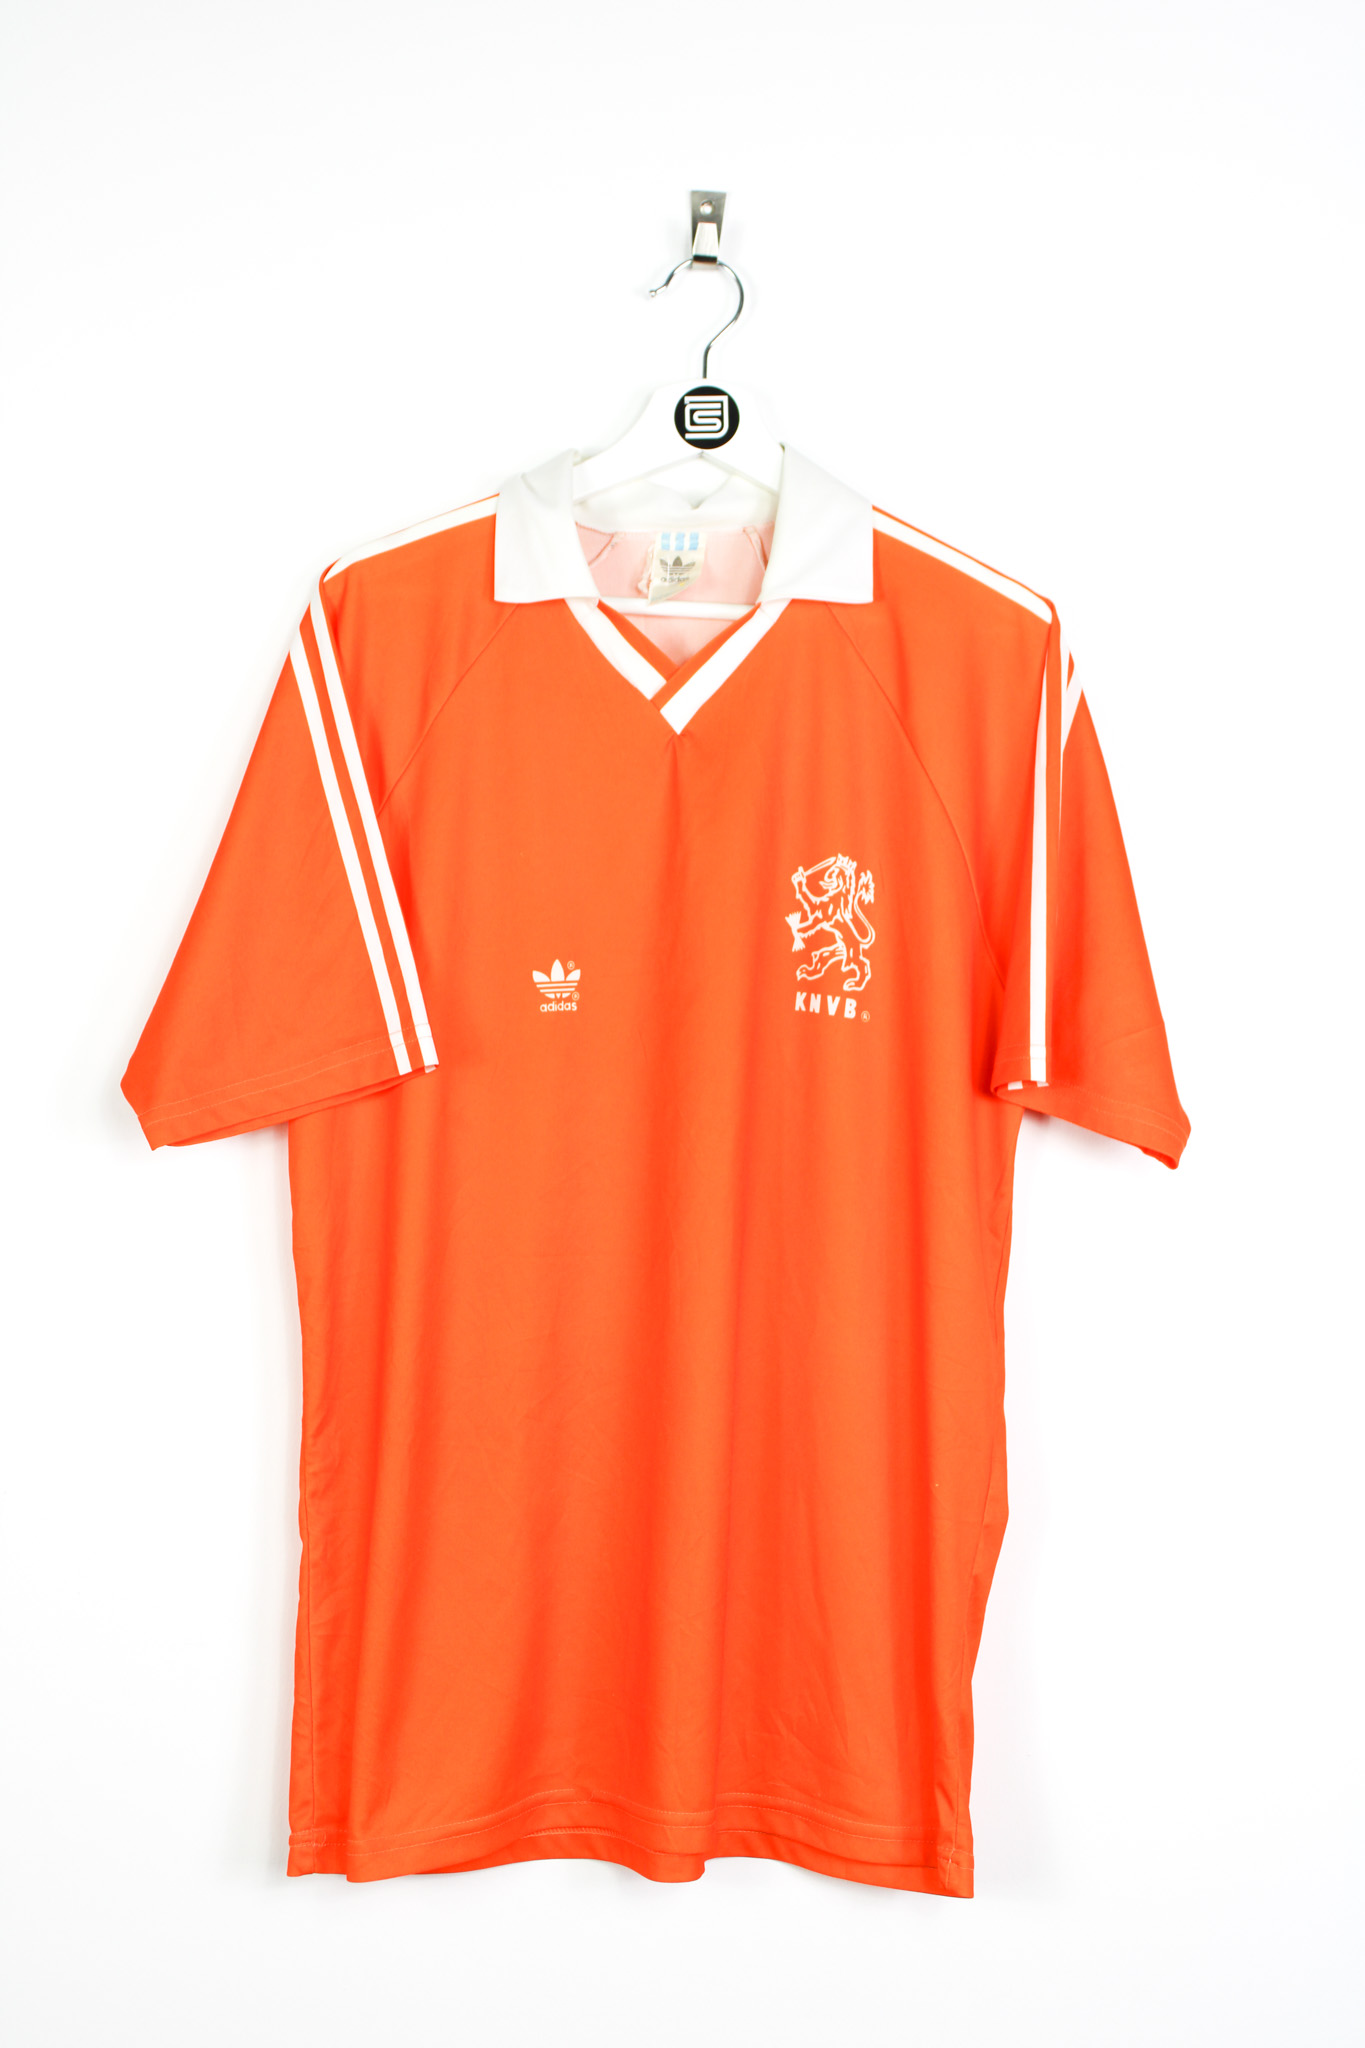 Netherlands' World Cup legends' jerseys